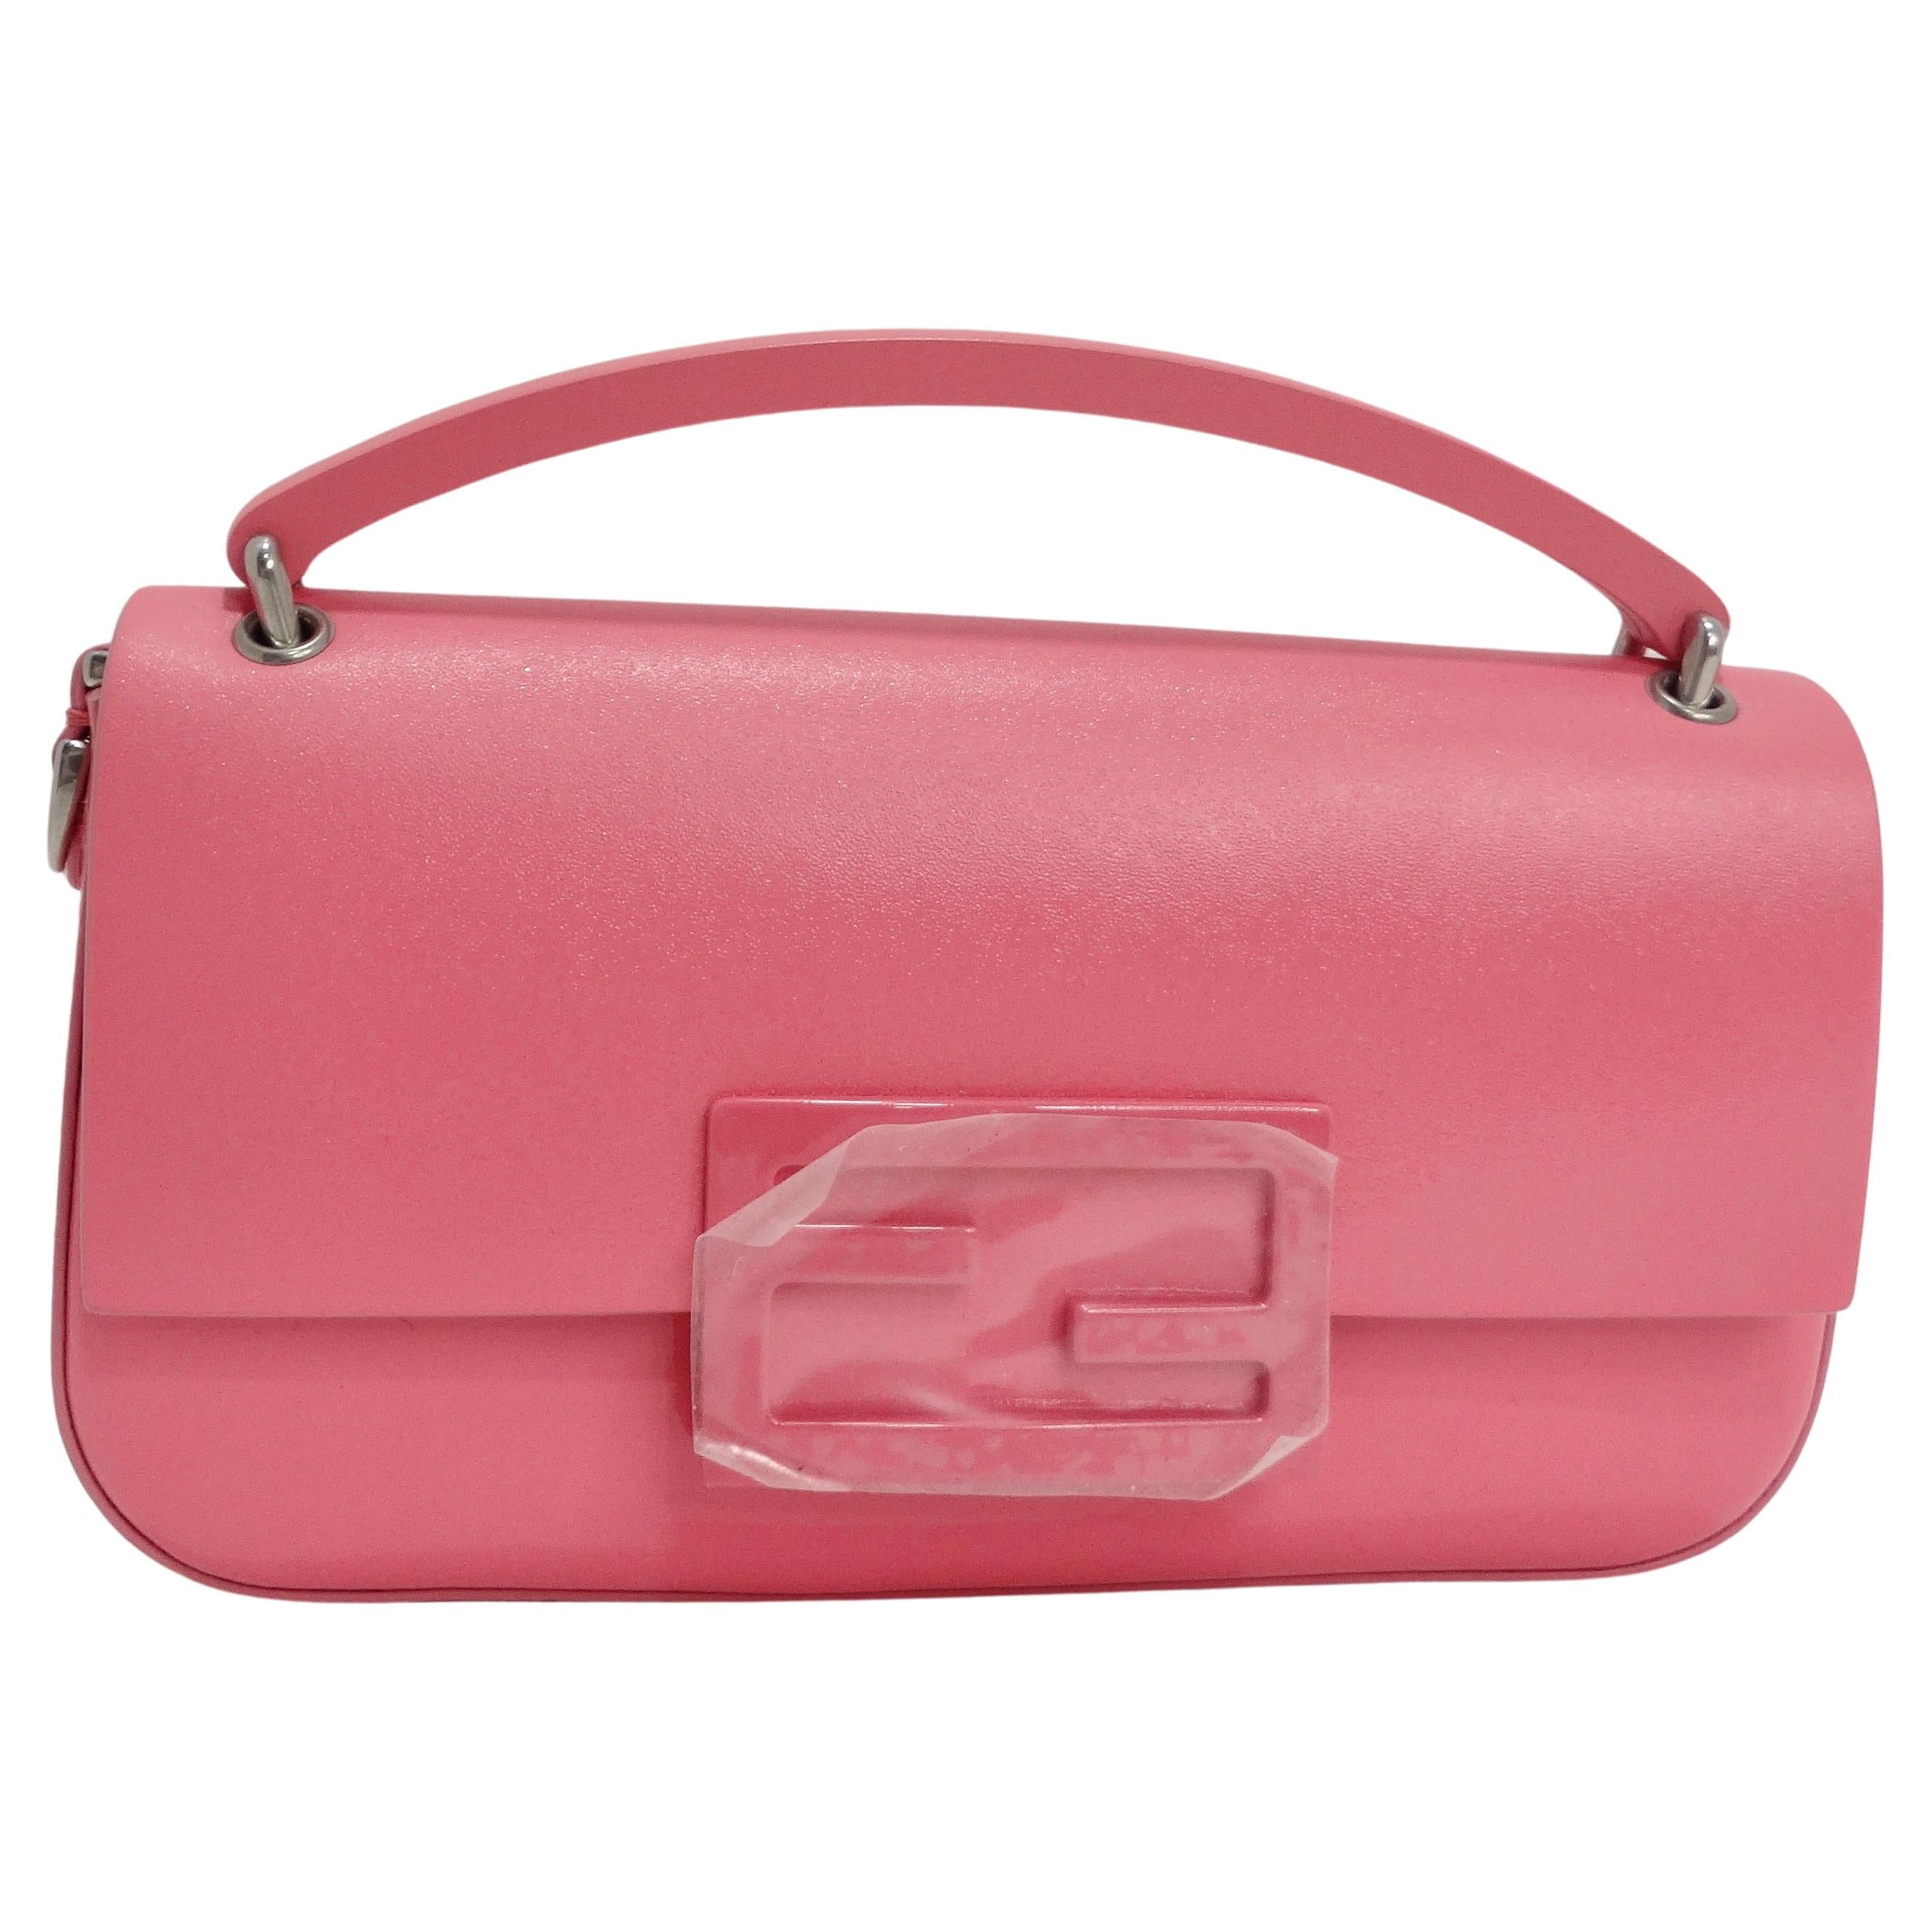 Fendi Baguette Bag Pink Paillettes Exotic Skin Handle Vintage